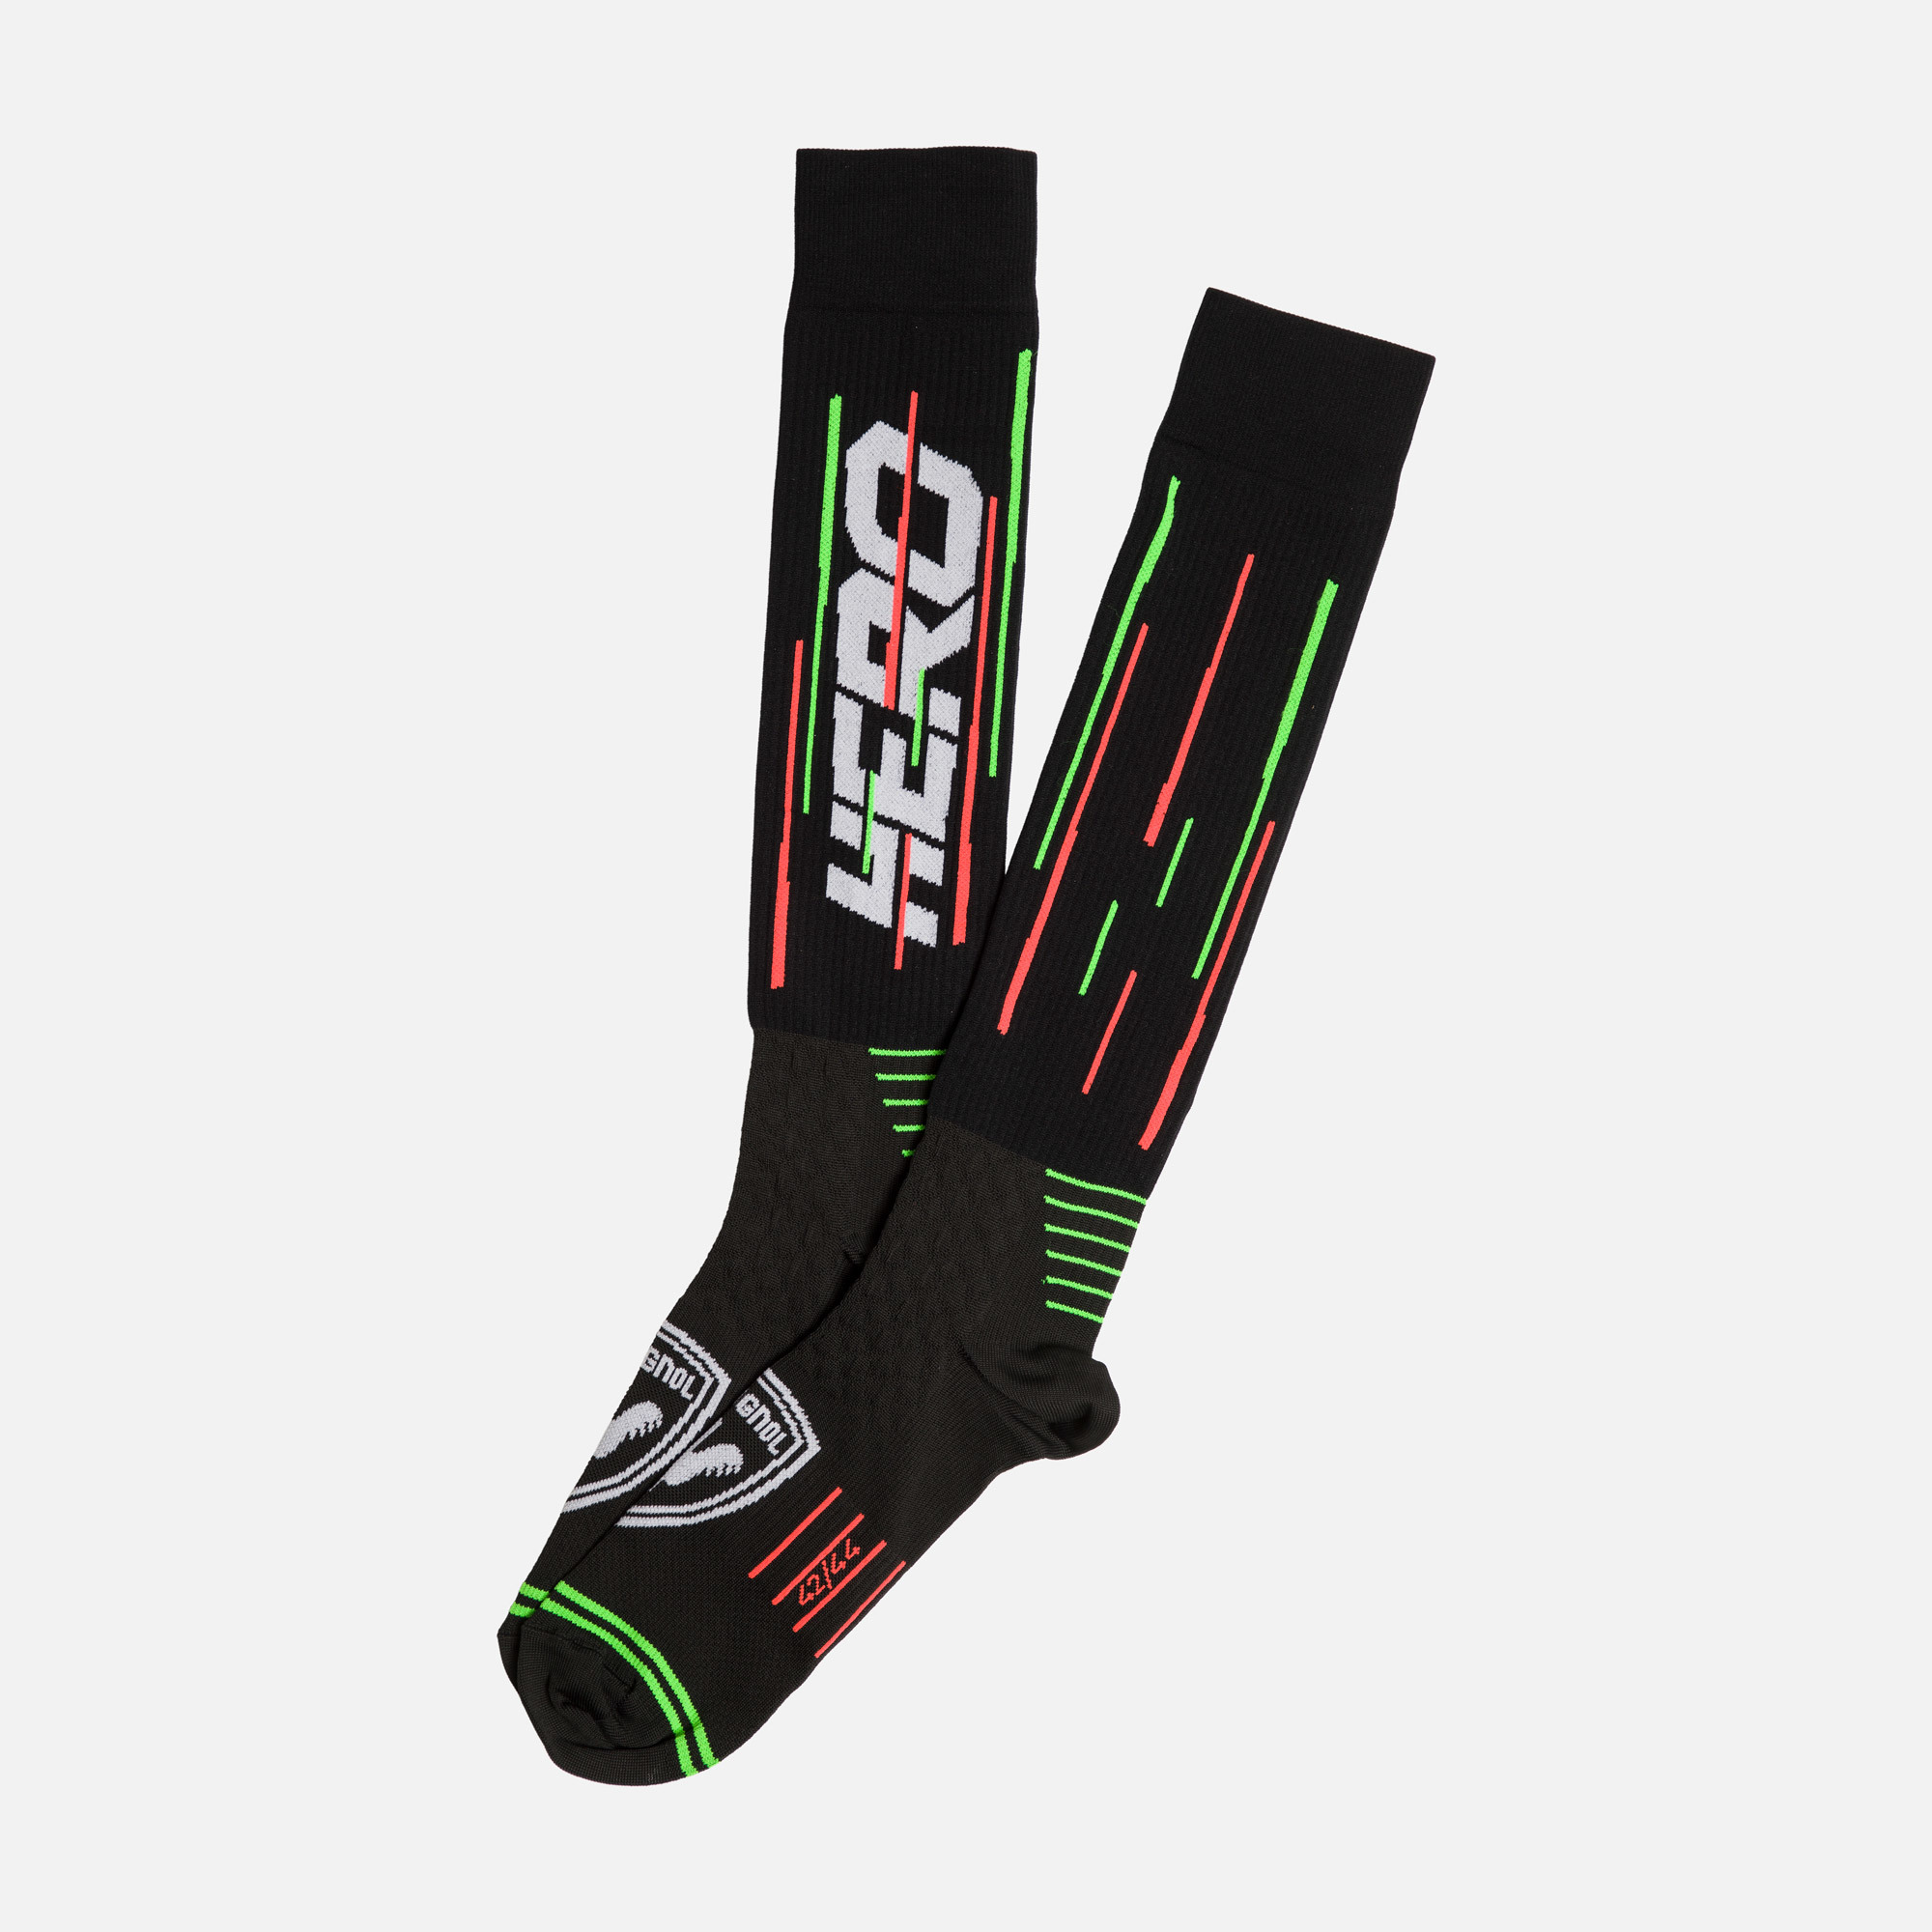 Hero Ski Socks